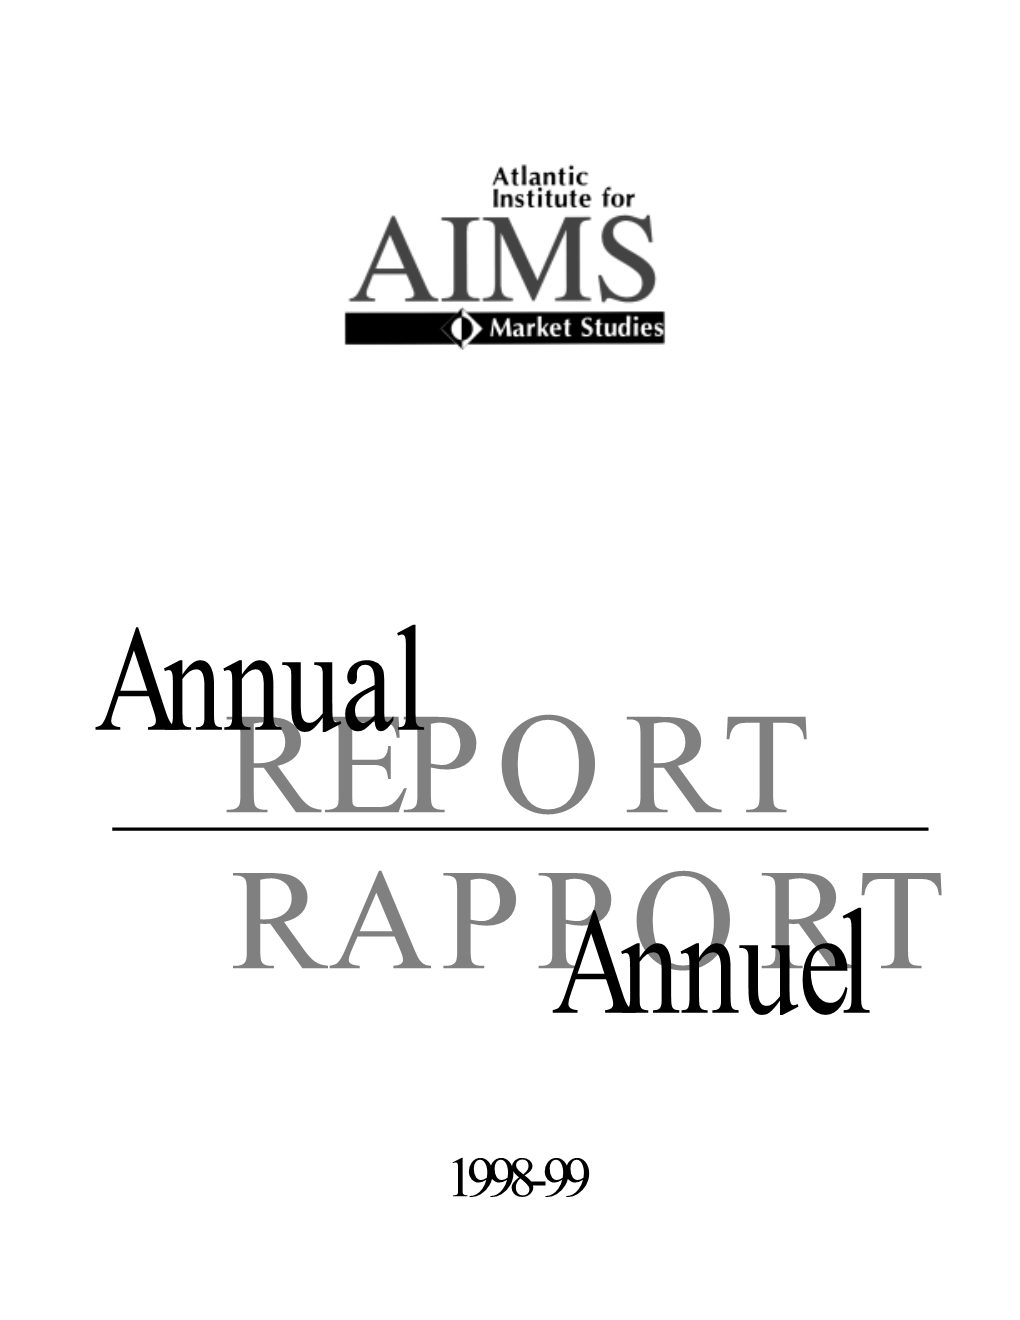 1998-1999 Annual Report/Rapport Annuel